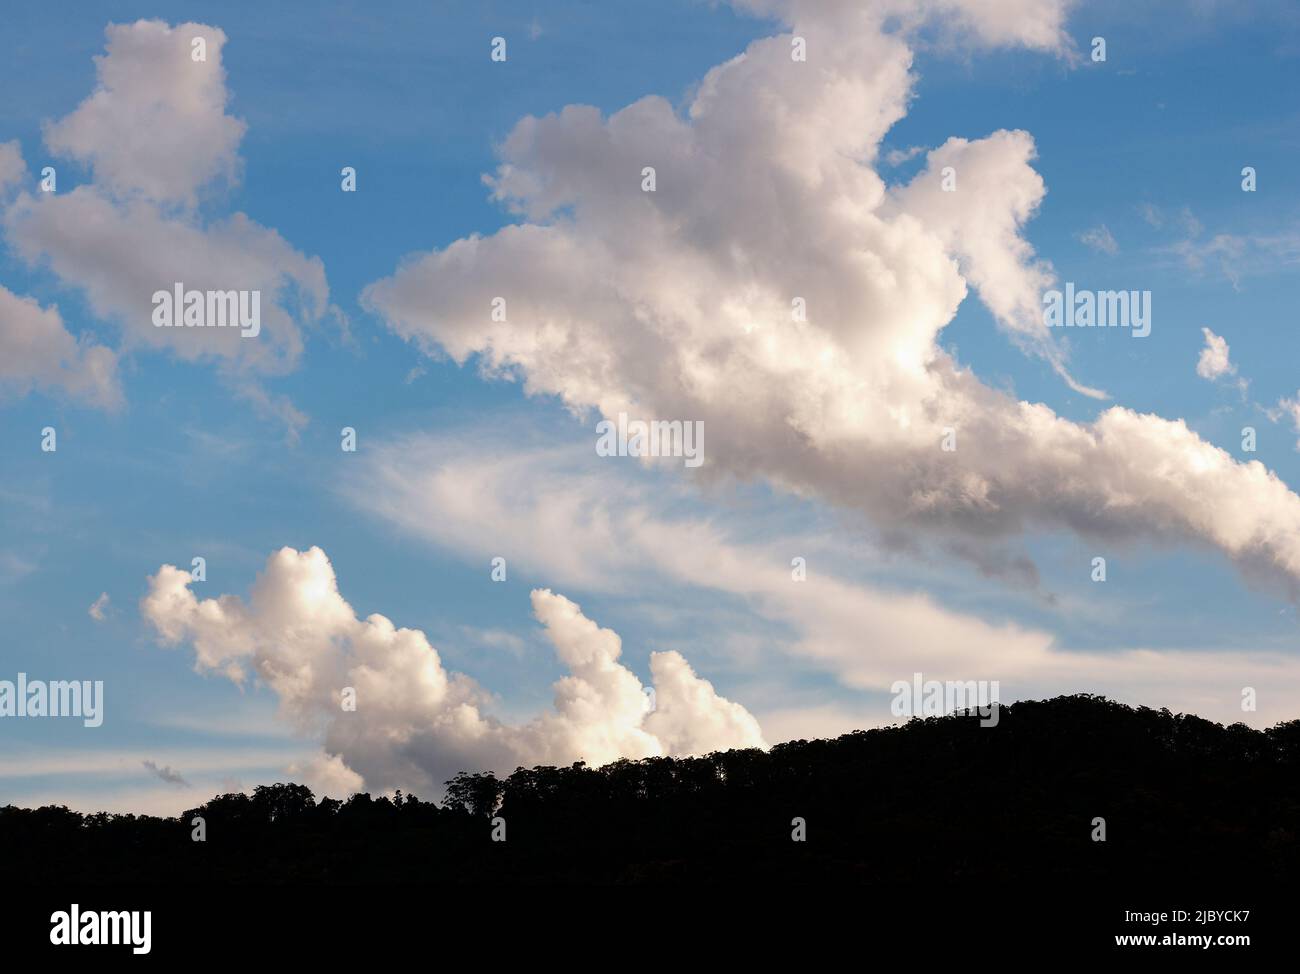 Nuages dans le ciel bleu au-dessus de la cime des arbres Banque D'Images